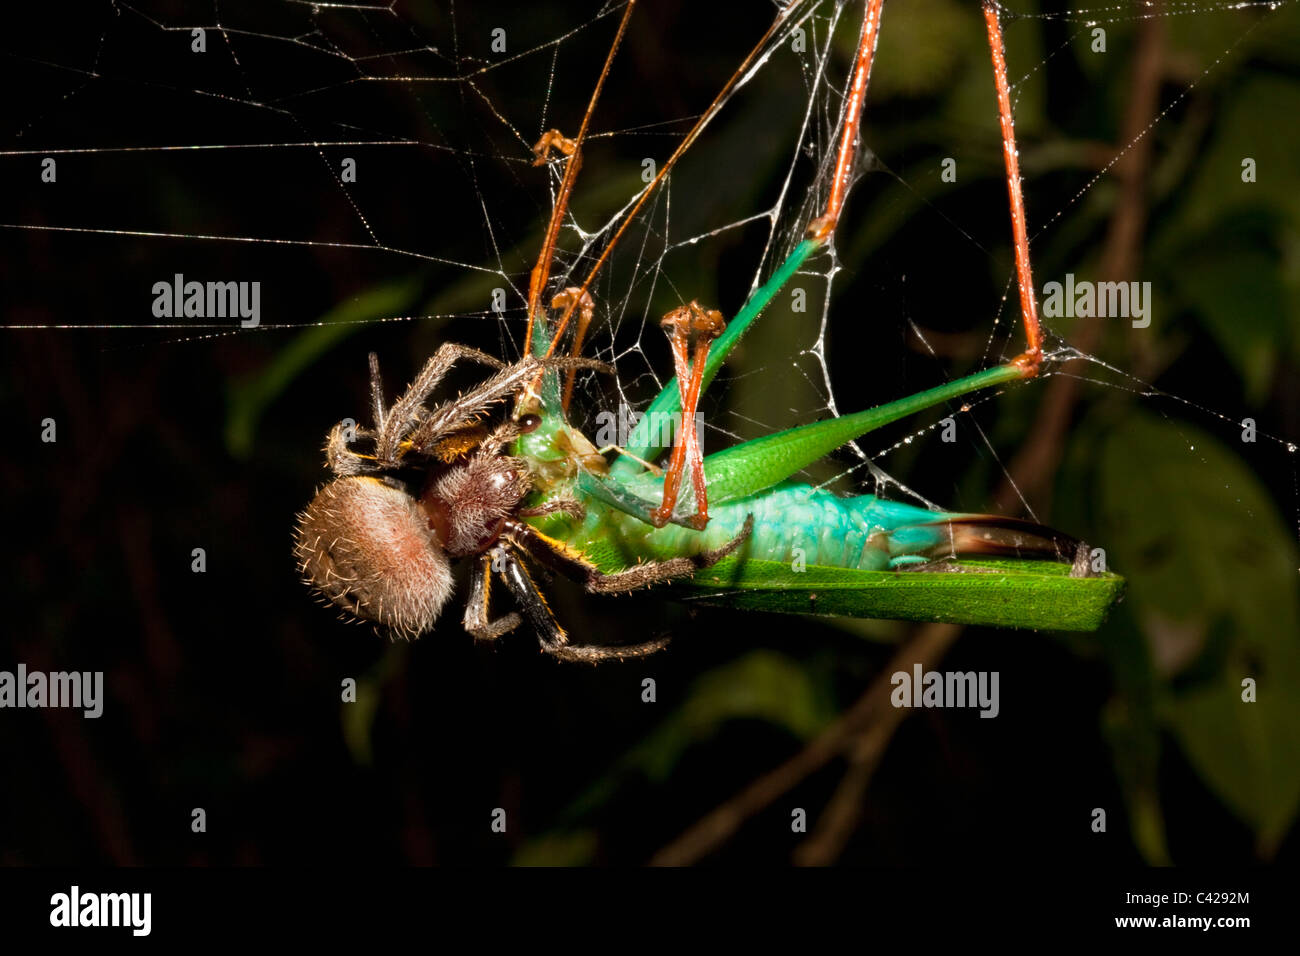 Peru, Boca Manu, Blanquillo, Manu National Park, UNESCO World Heritage Site. Spider eating praying mantis in web. Stock Photo